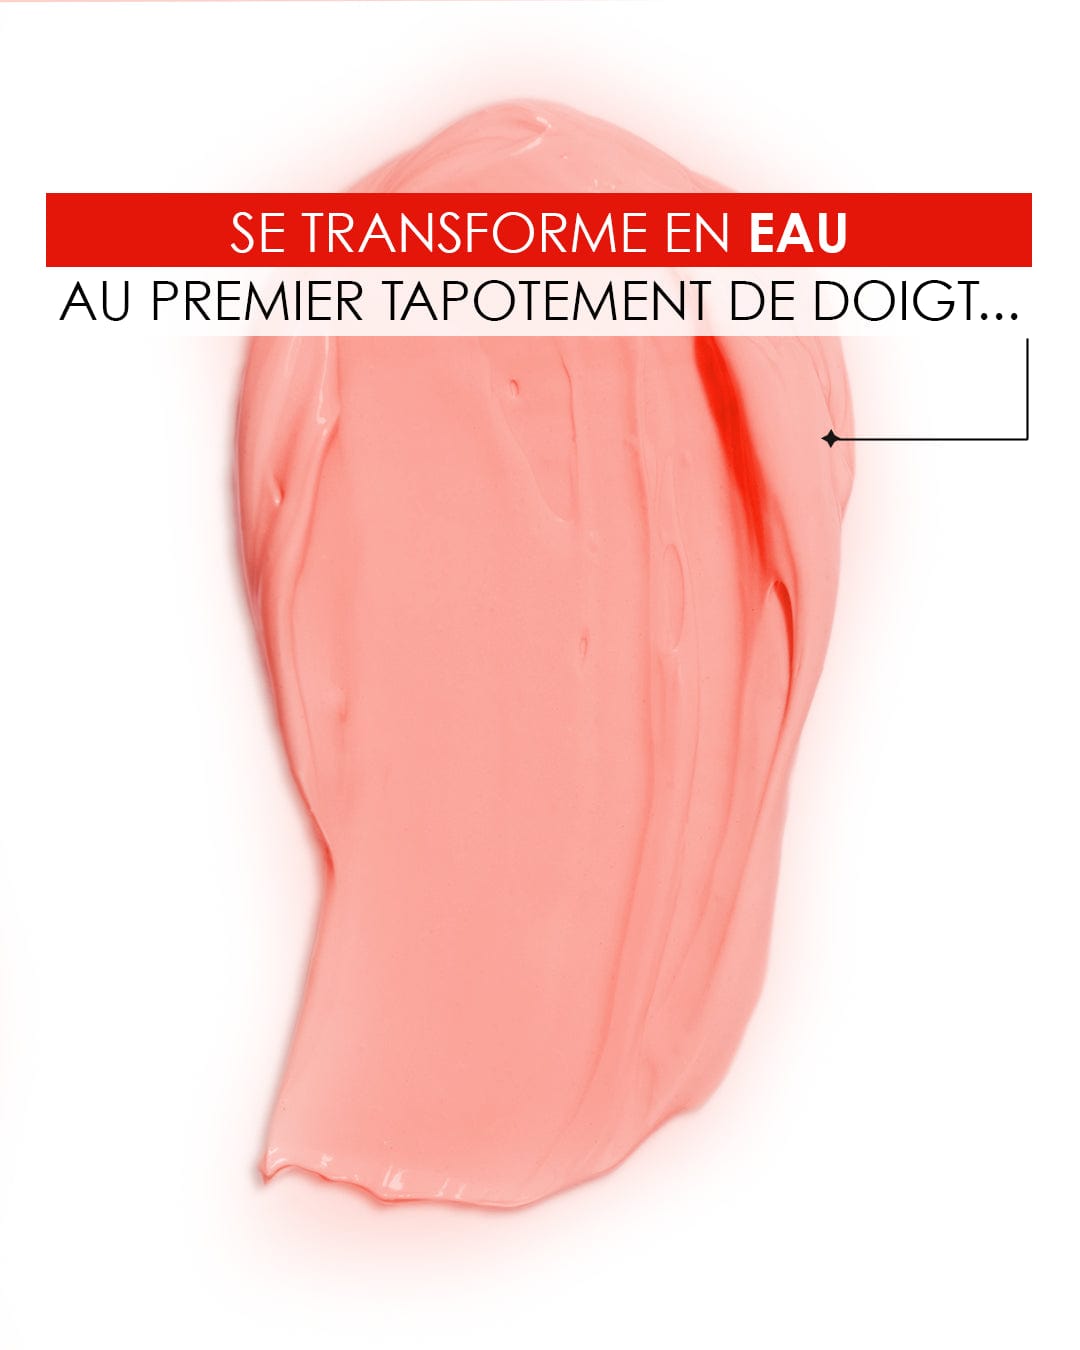 Diabolique Tomate - Crème d'Eau Edition Limitée